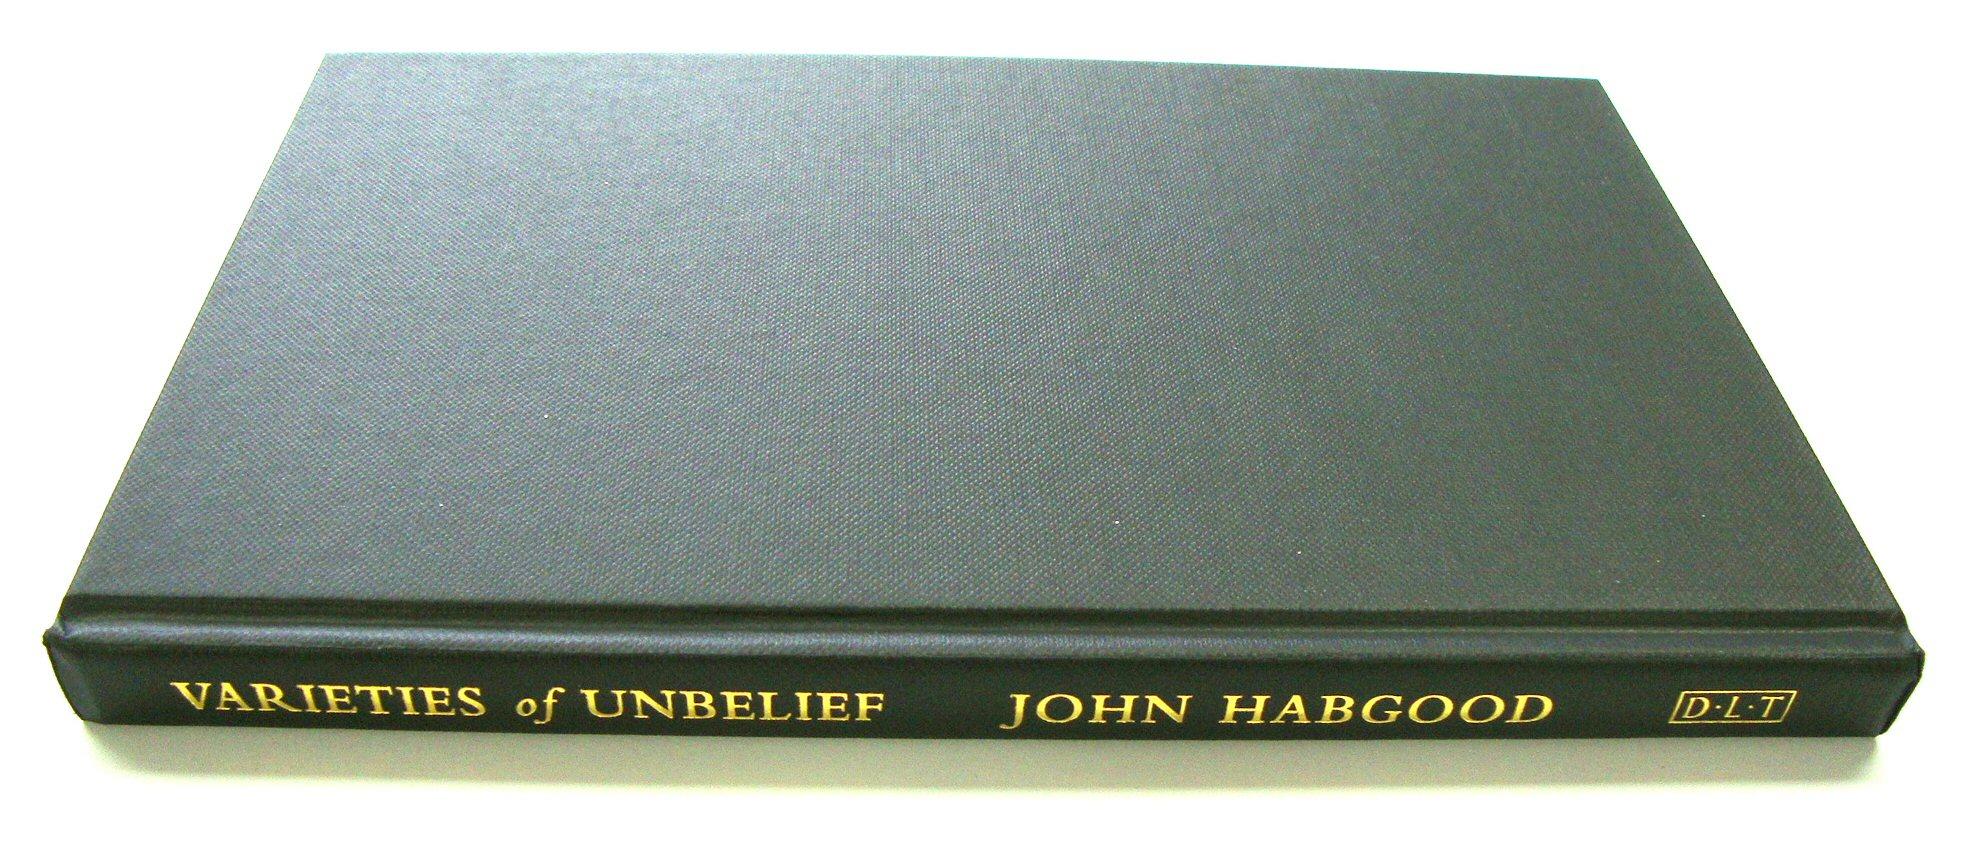 Varieties of Unbelief - Habgood, John